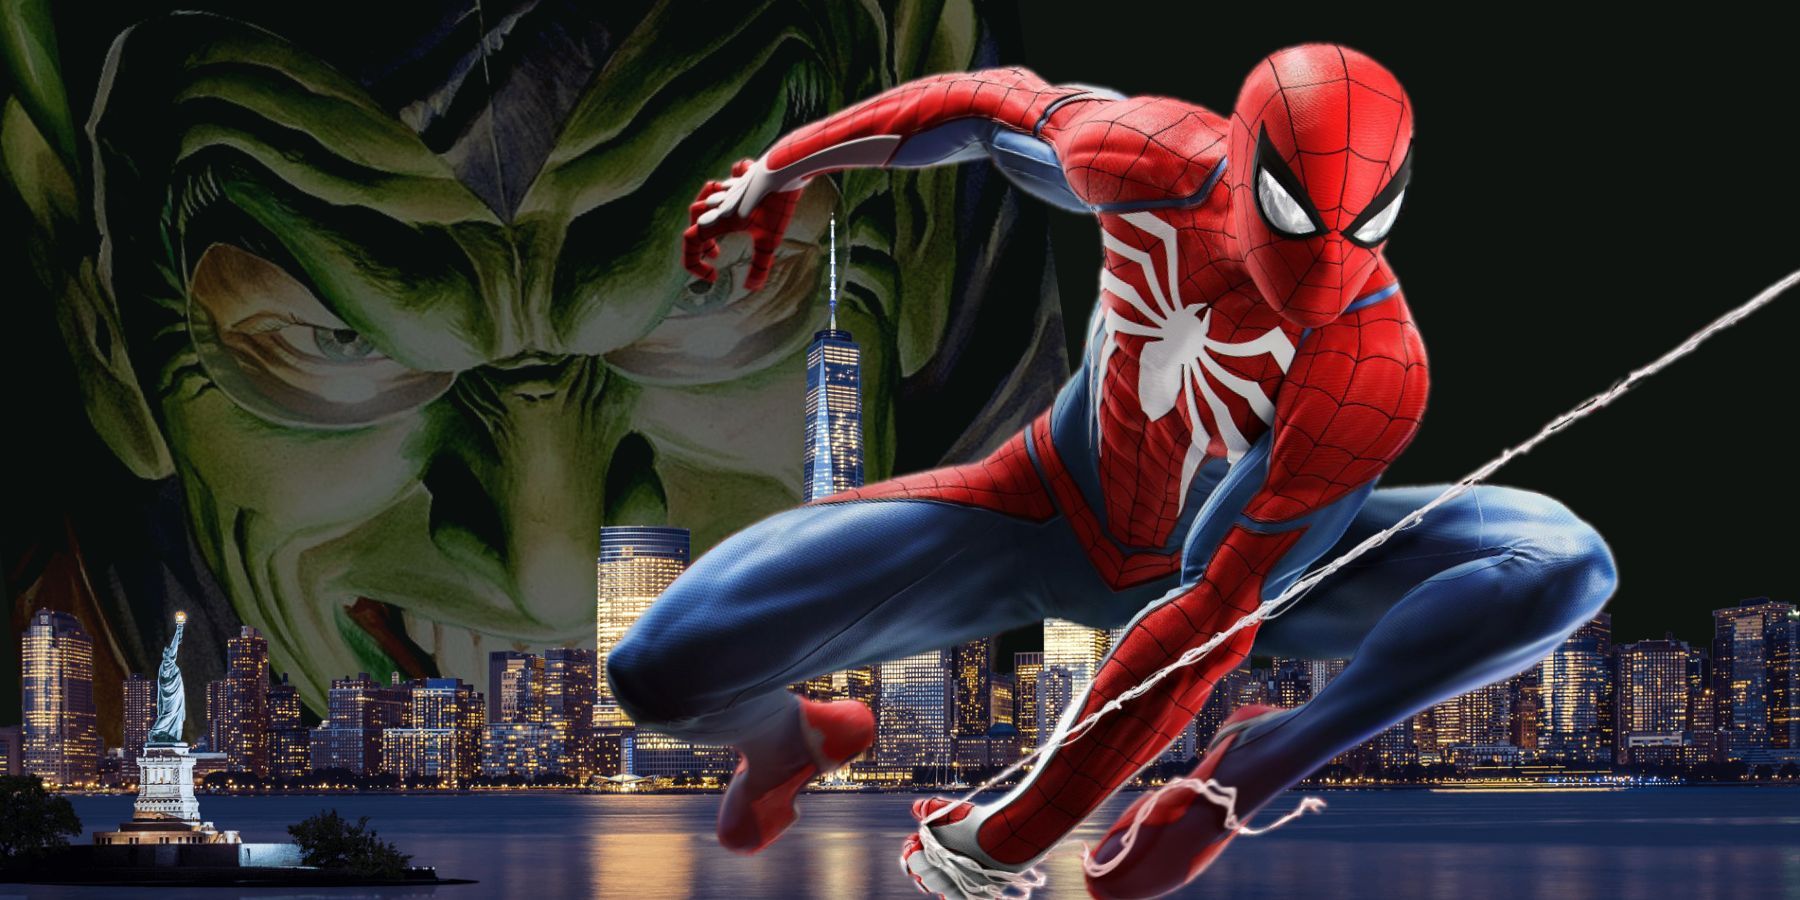 marvel spiderman 2 case for green goblin insomniac game villain